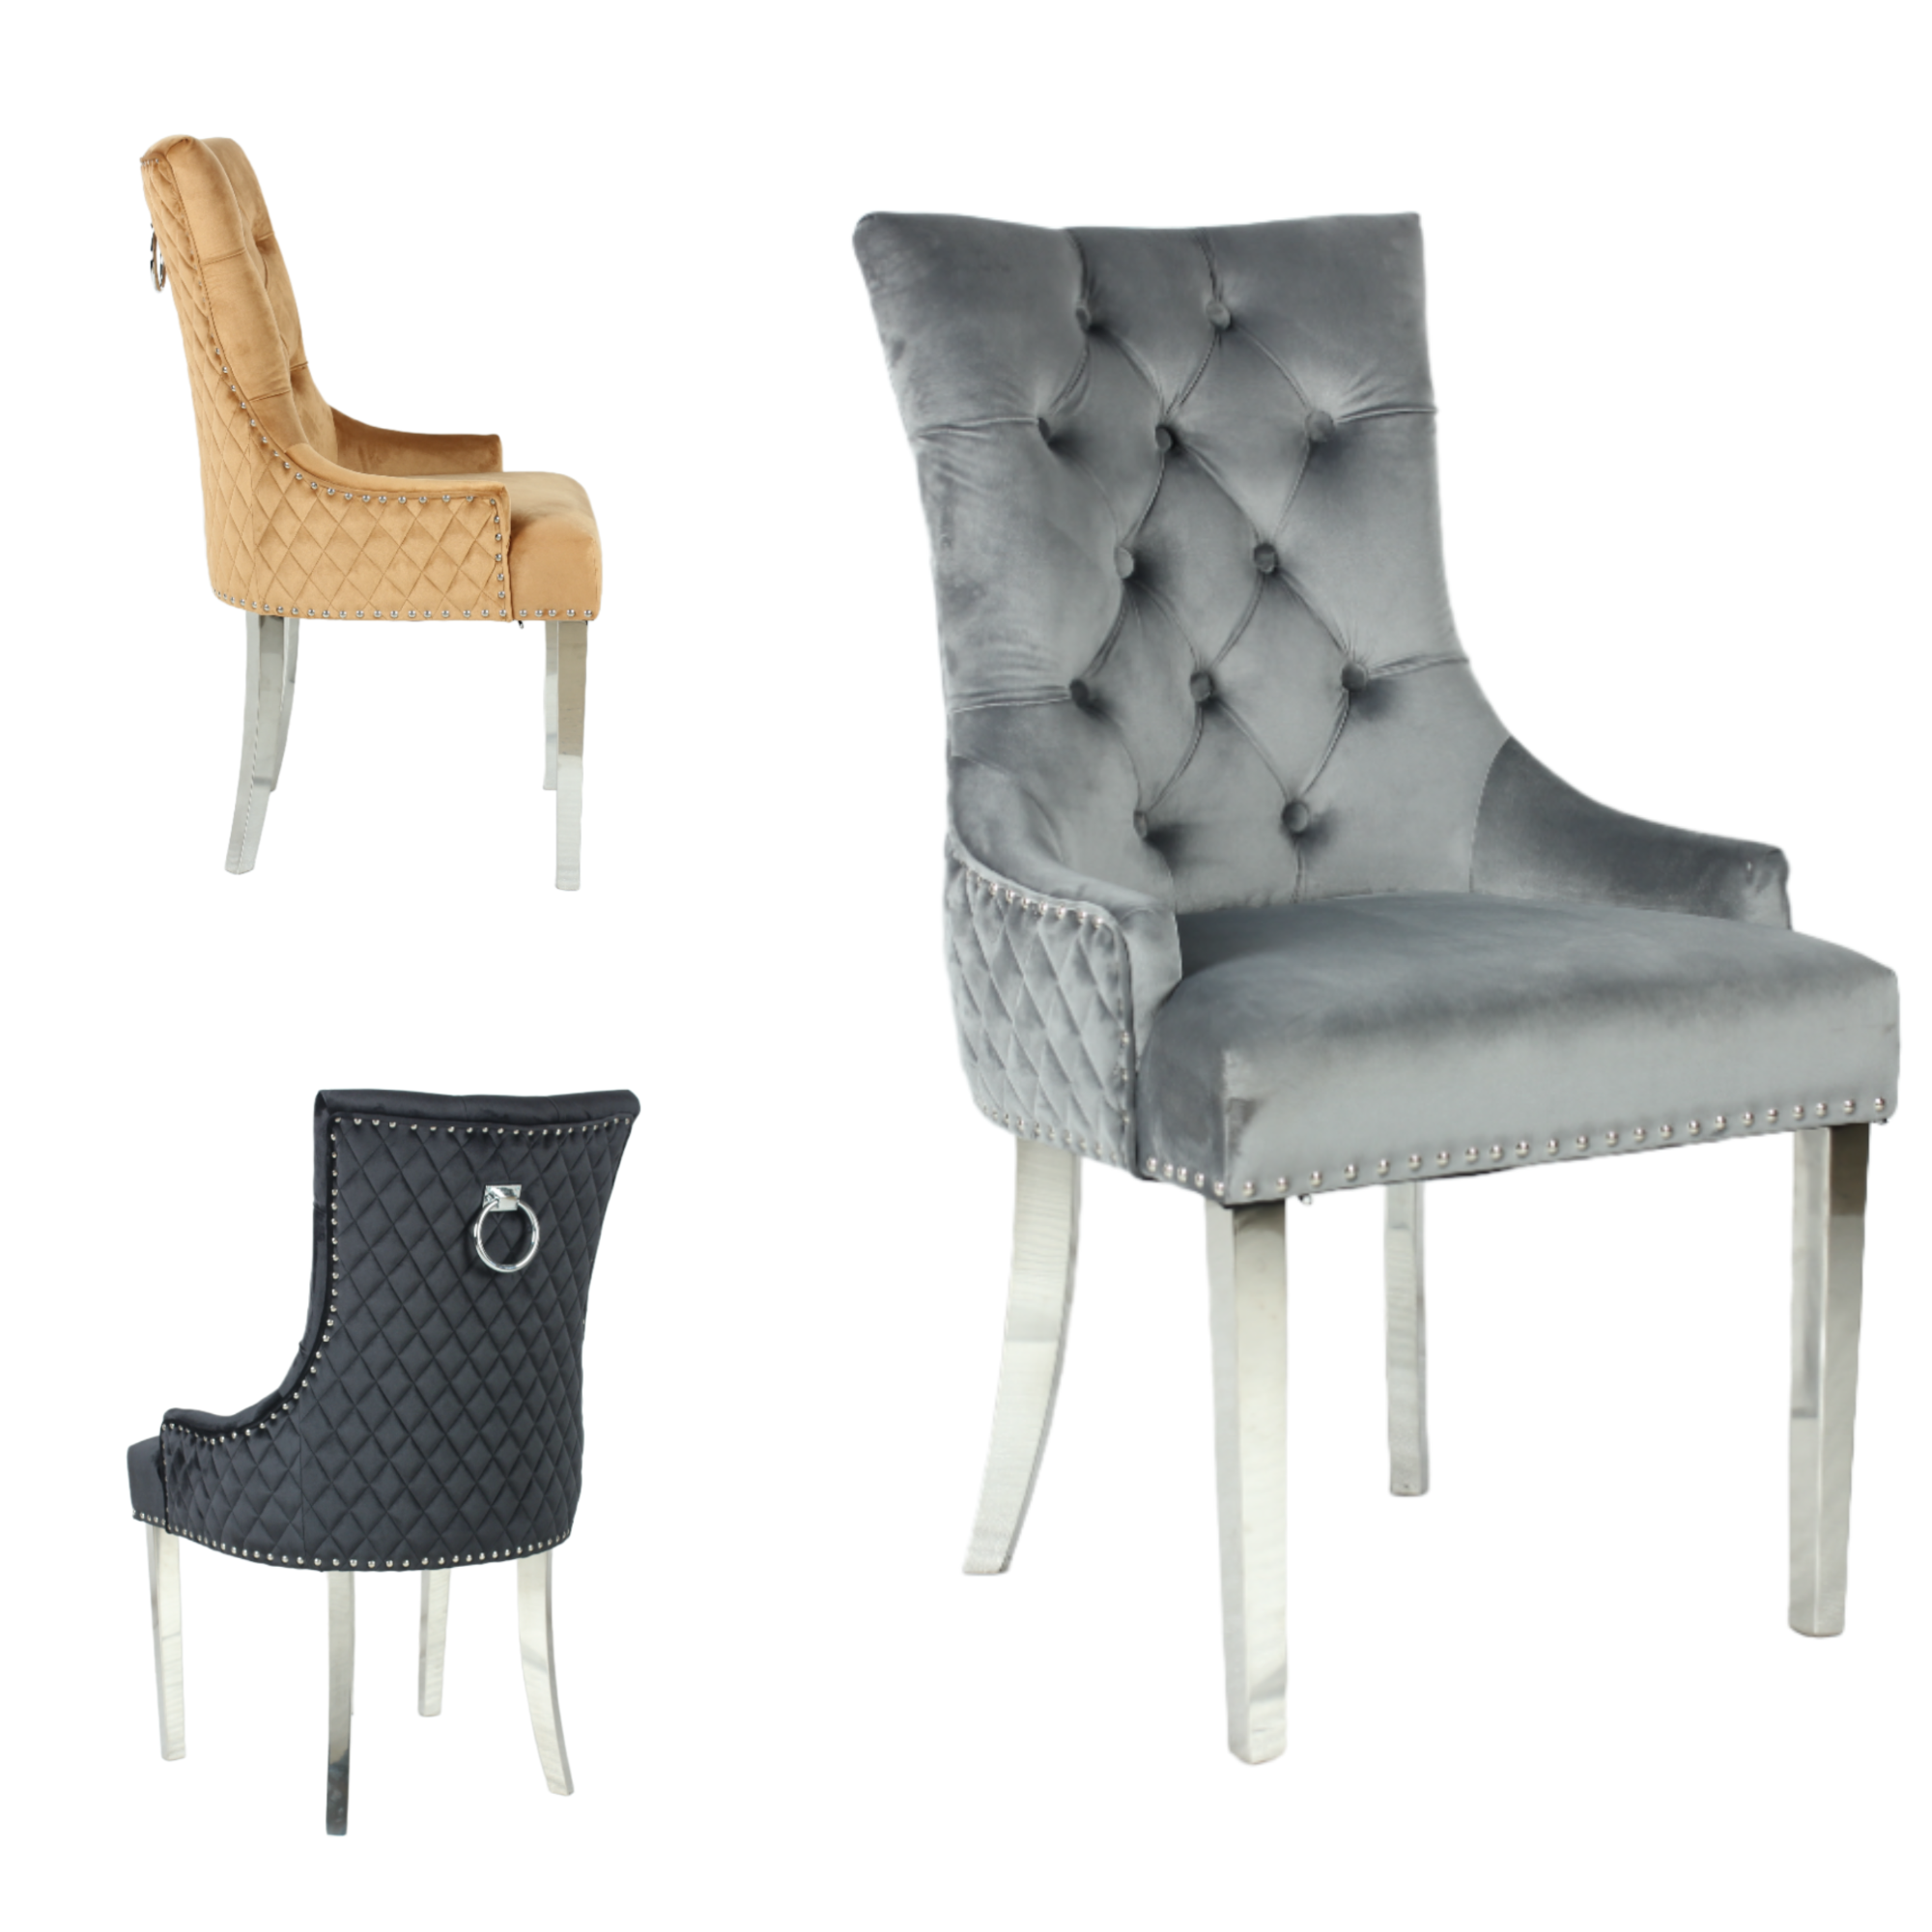 provincial furniture perth, french furniture perth, french provincial chairs perth